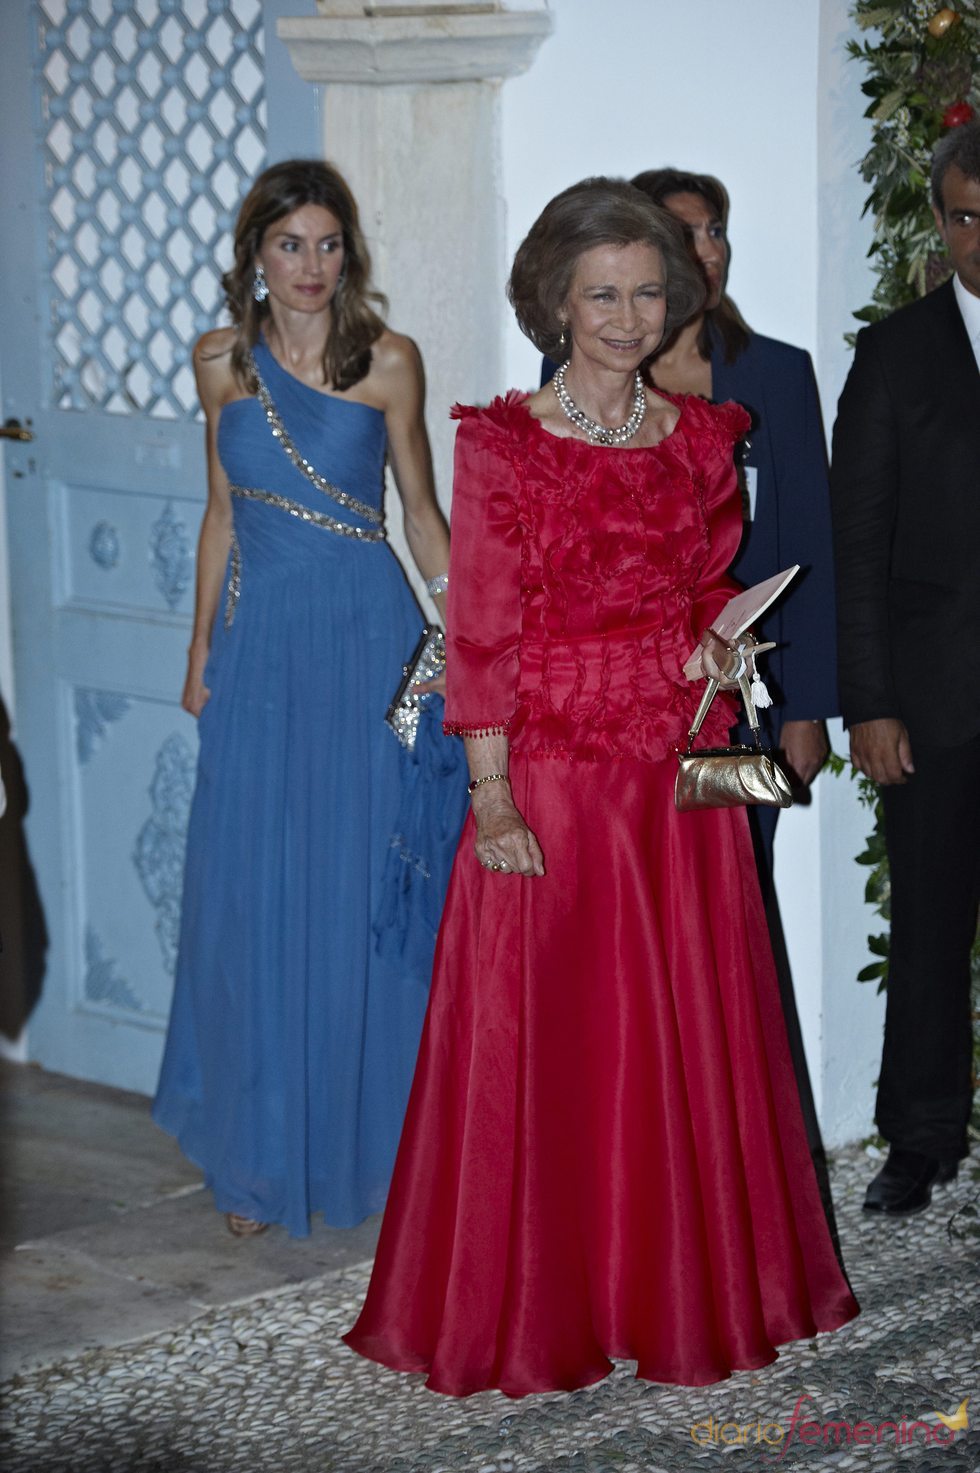 La Reina Sofía con vestido largo rojo